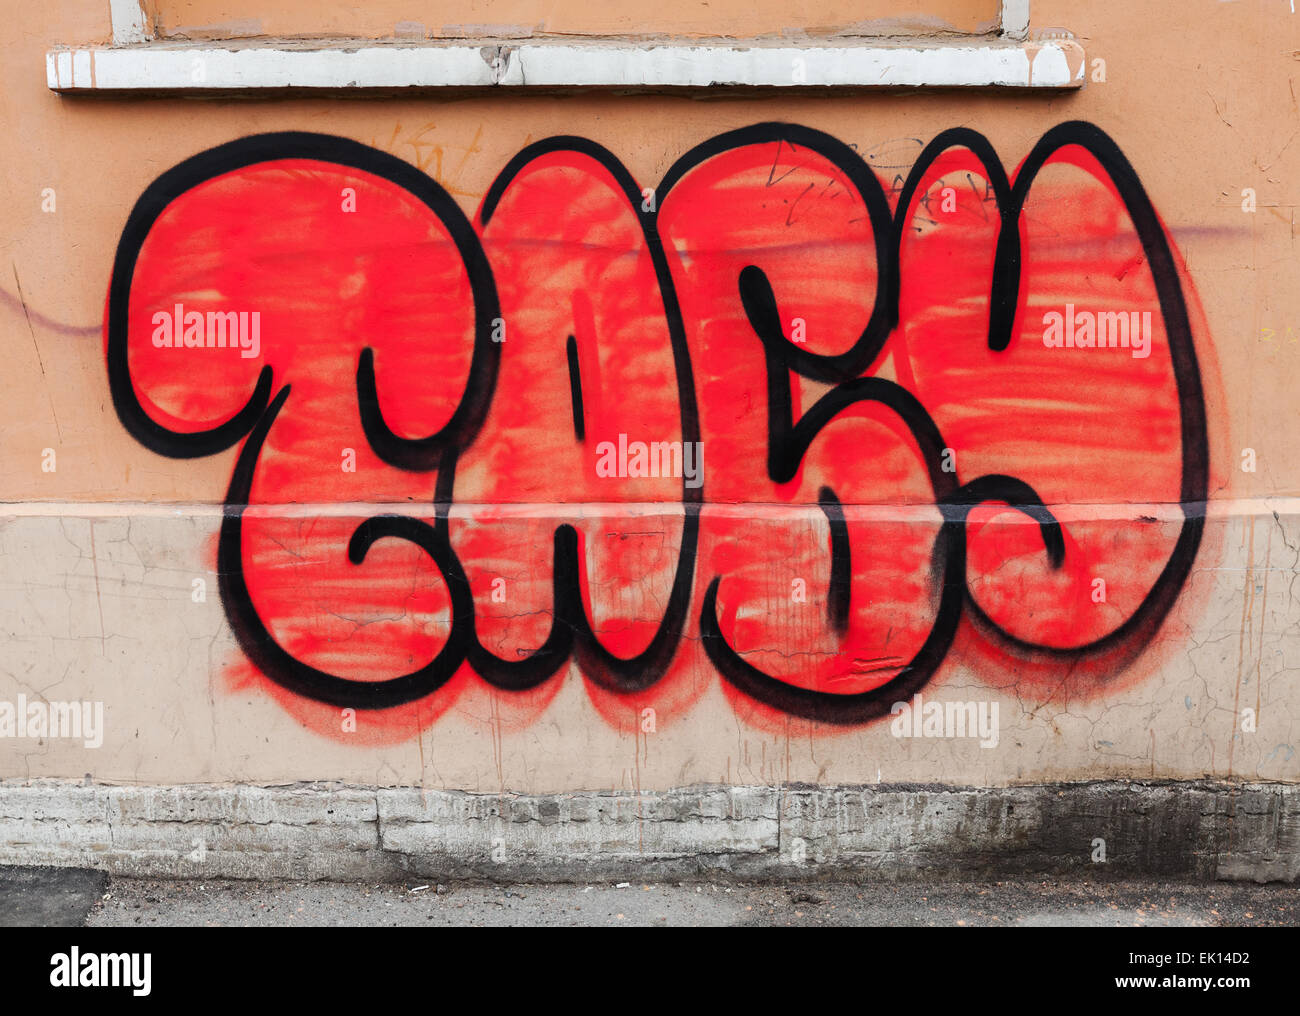 Saint-pétersbourg, Russie - 3 Avril, 2015 : texte graffiti rouge sur le mur, tabou signifie en russe. Vasilievsky island Banque D'Images